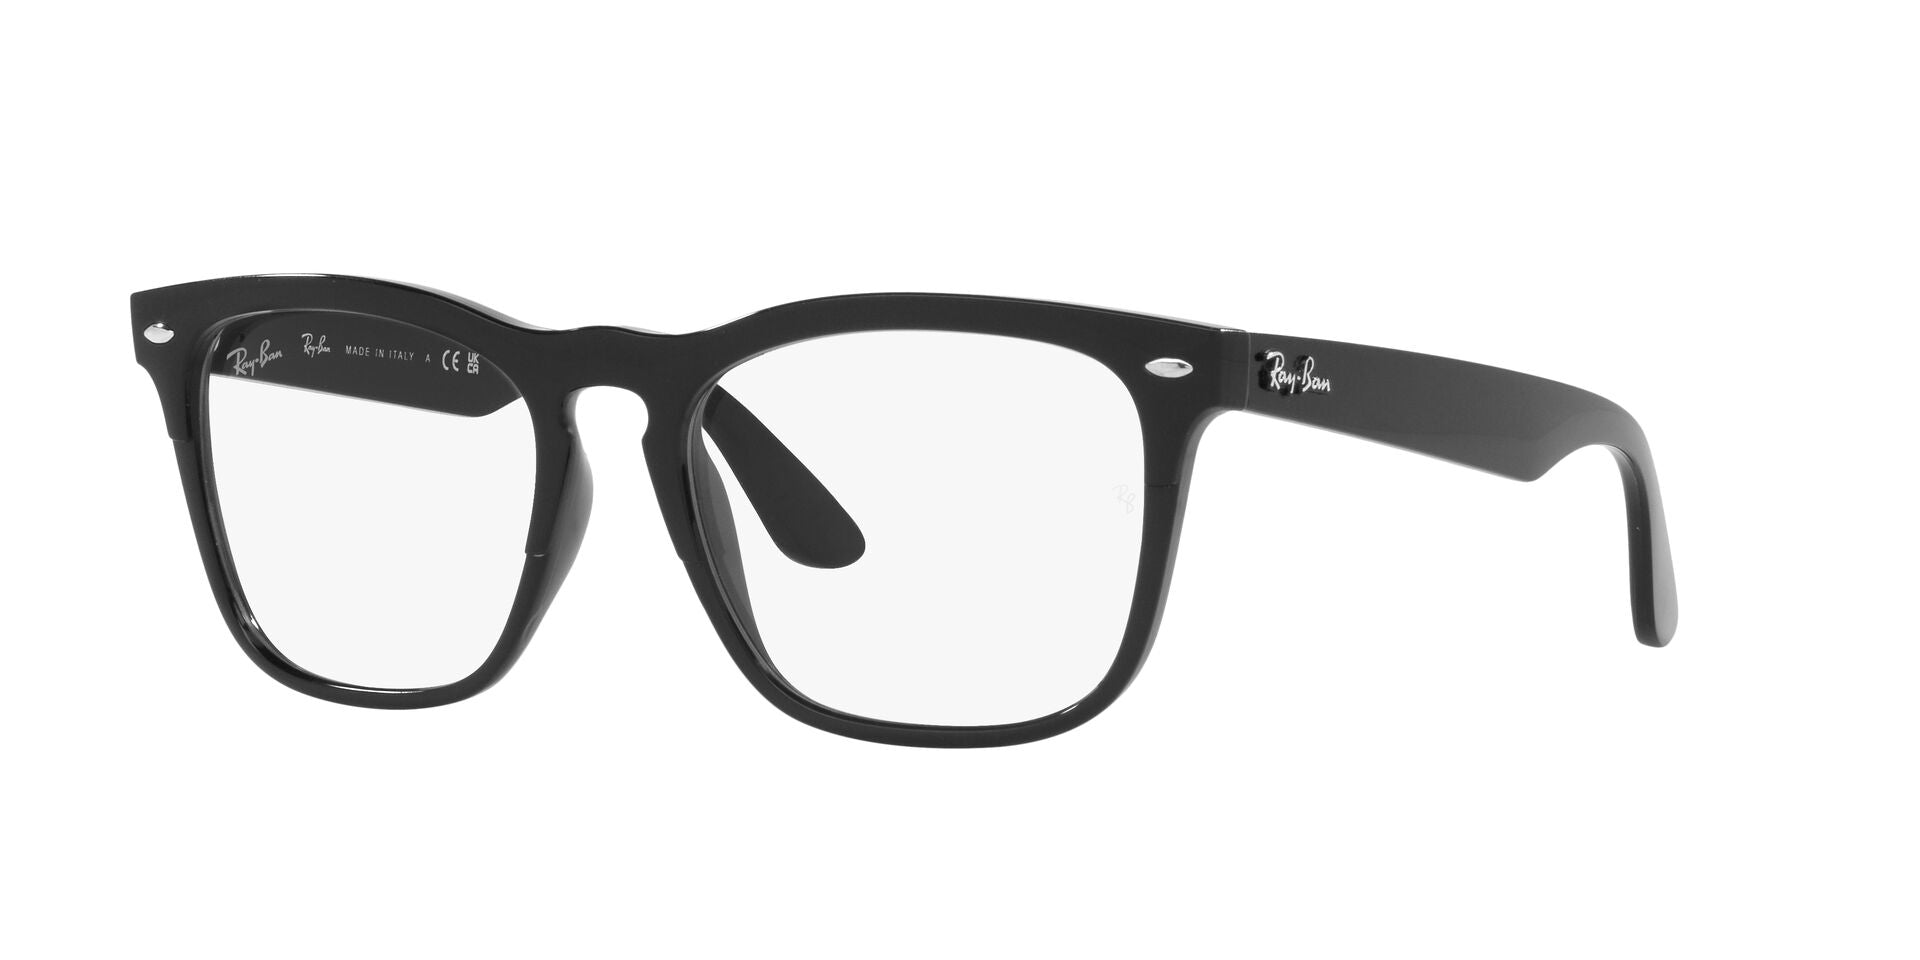 Ray-Ban Steve RB4487V Square Glasses | Fashion Eyewear US